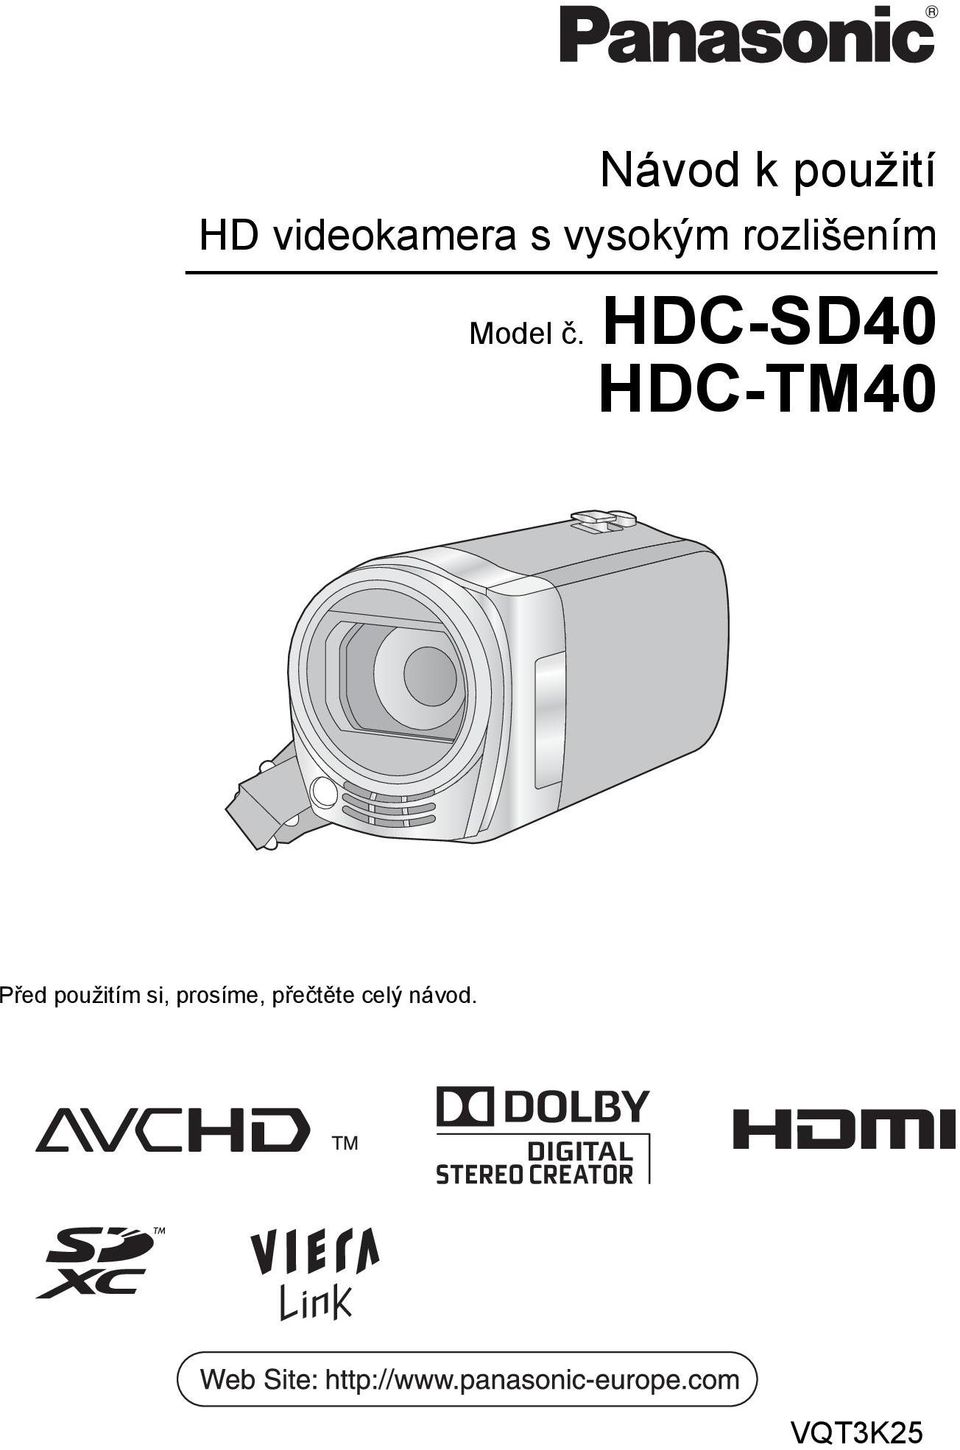 HDC-SD40 HDC-TM40 Před použitím